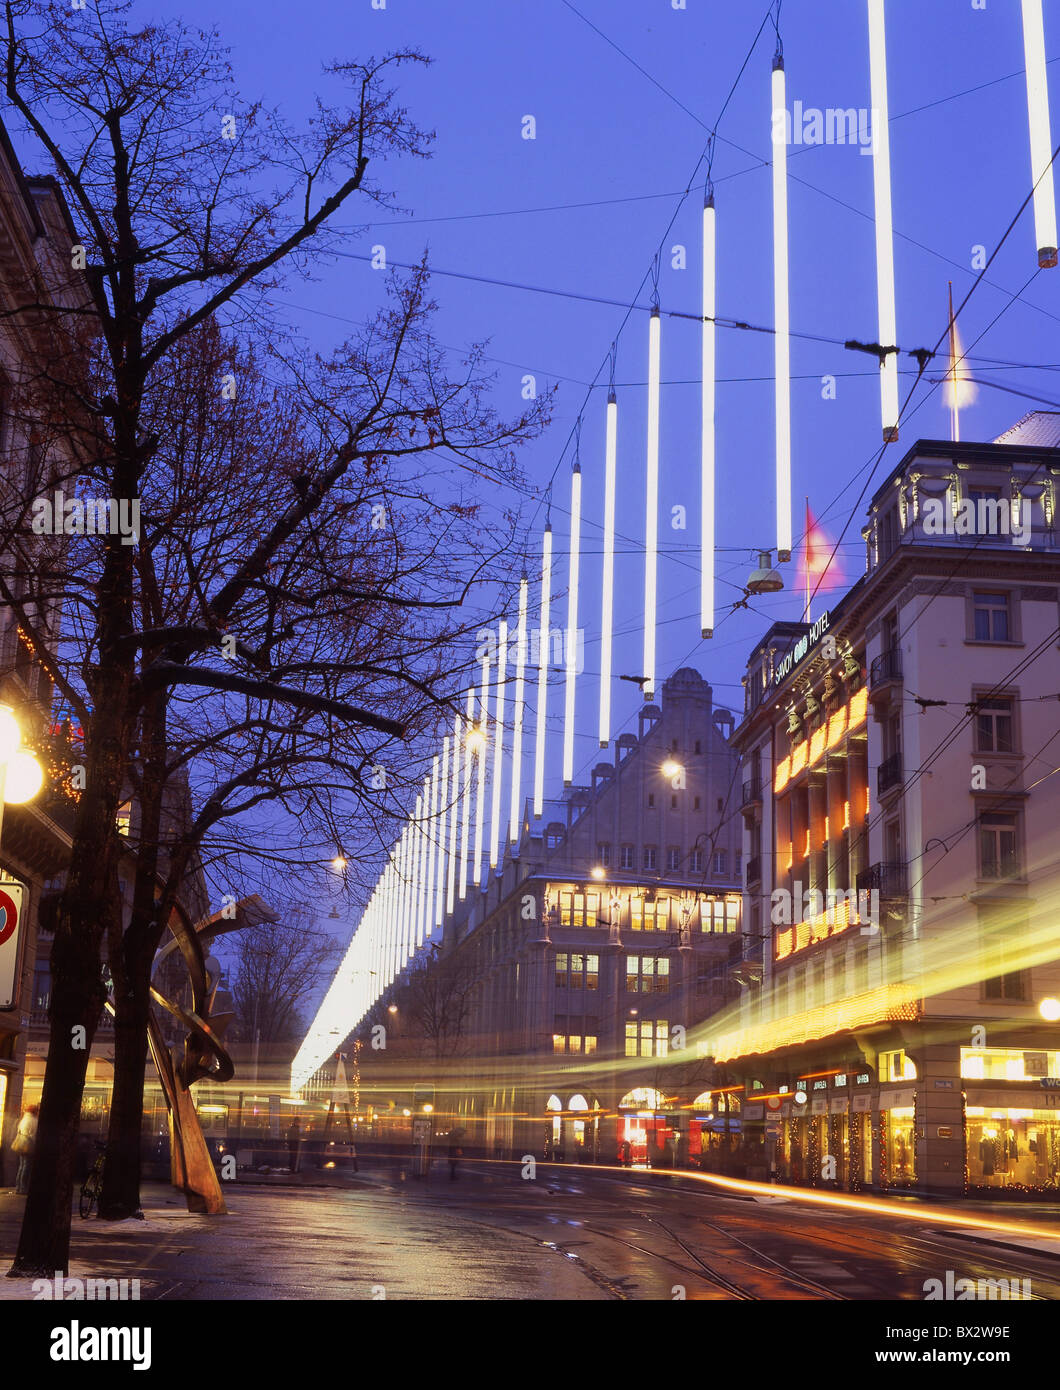 Zürich-Stadt bei Nacht Nacht Weihnachten Winter Weihnachtsbeleuchtung Bahnhofstrasse Beleuchtung einkaufen Ausrüstu Stockfoto